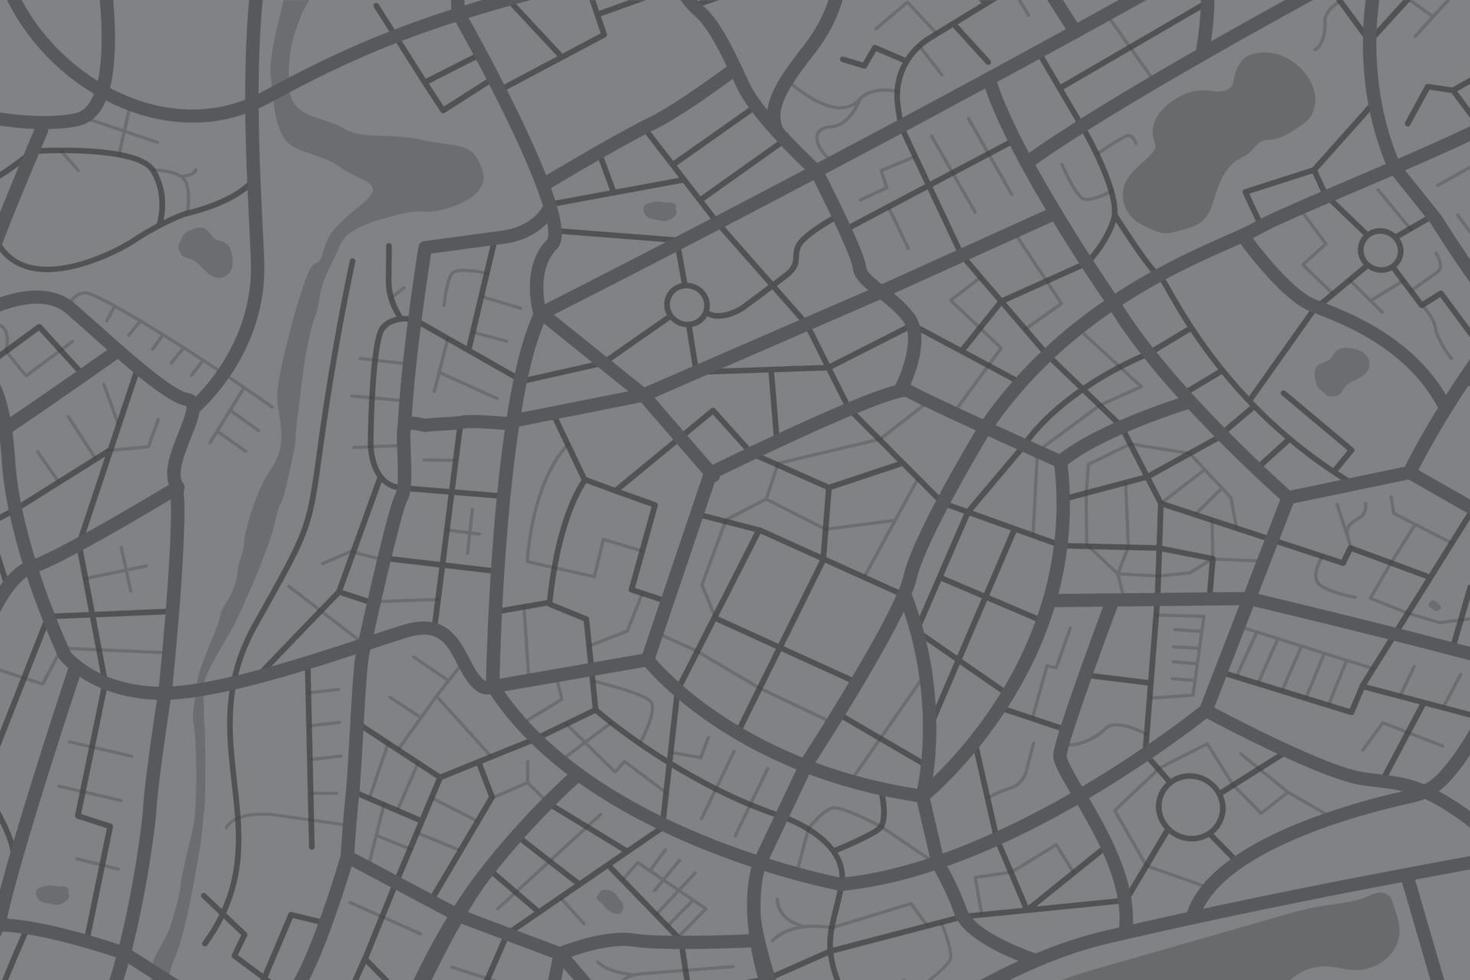 antenn rena topp se av de stad Karta med gata och flod 010 vektor